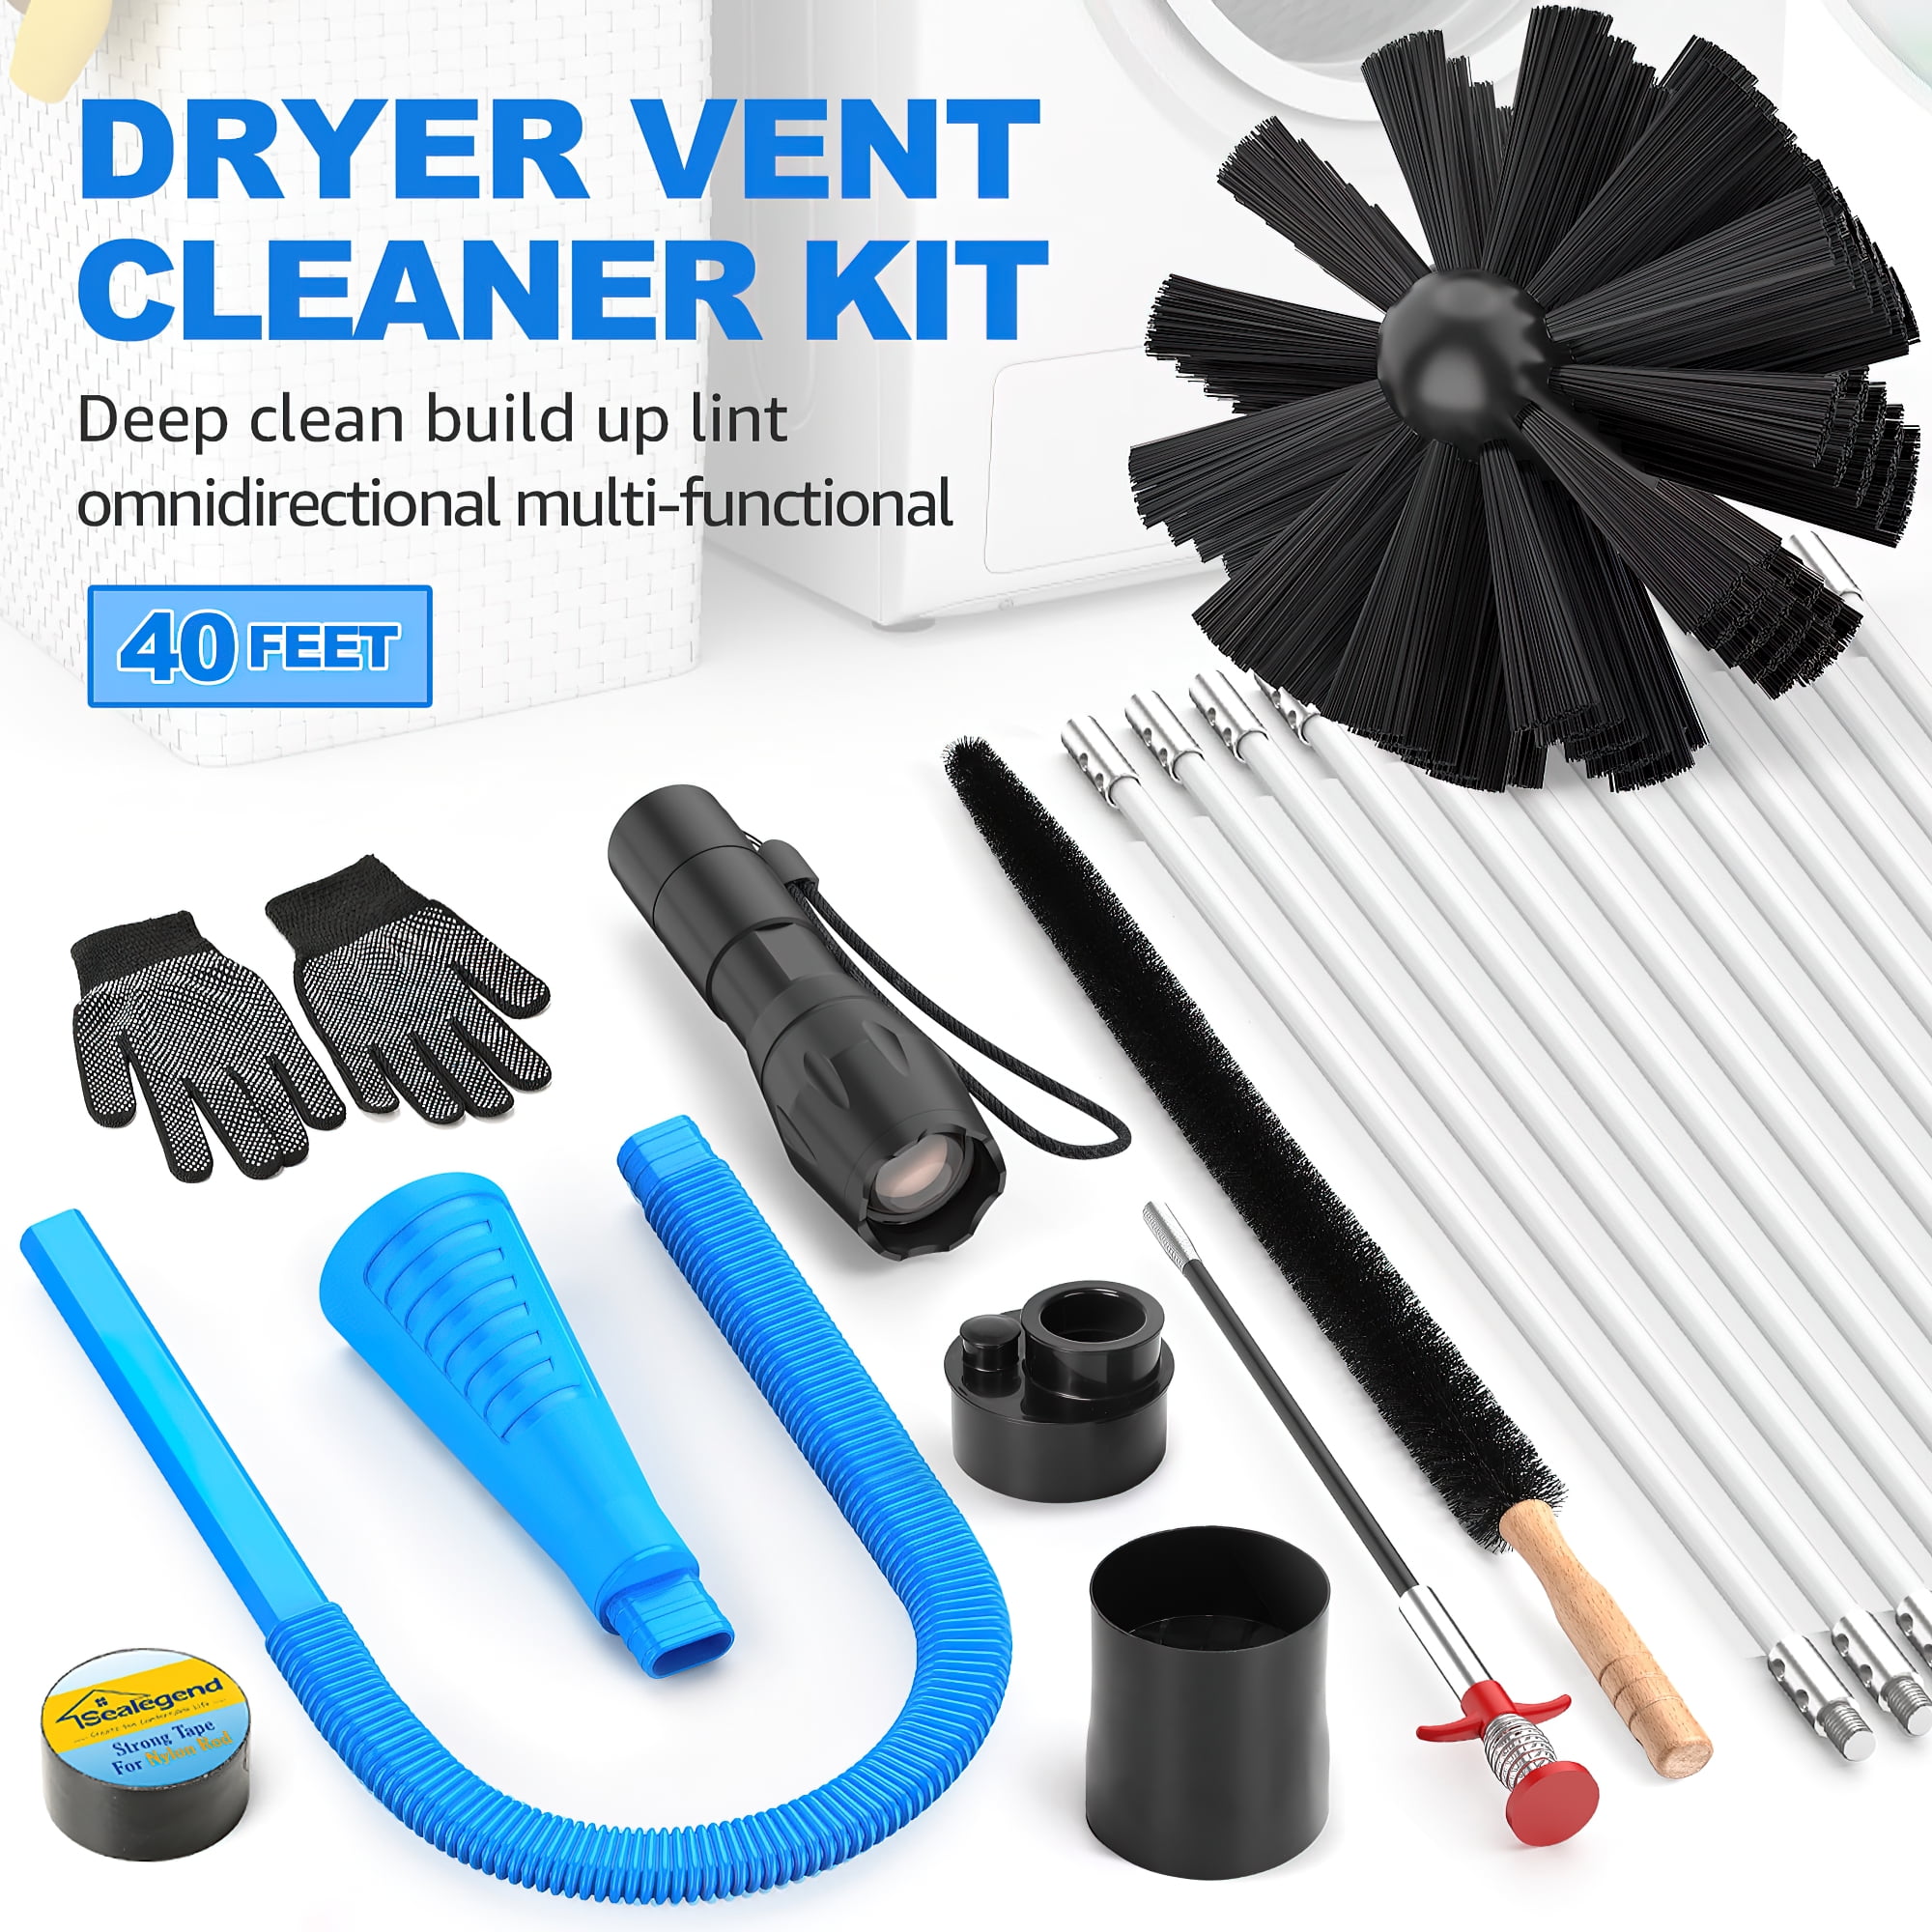 Dryvenck 30 Feet Dryer Cleaner Brush Dryer Vent Cleaner Kit